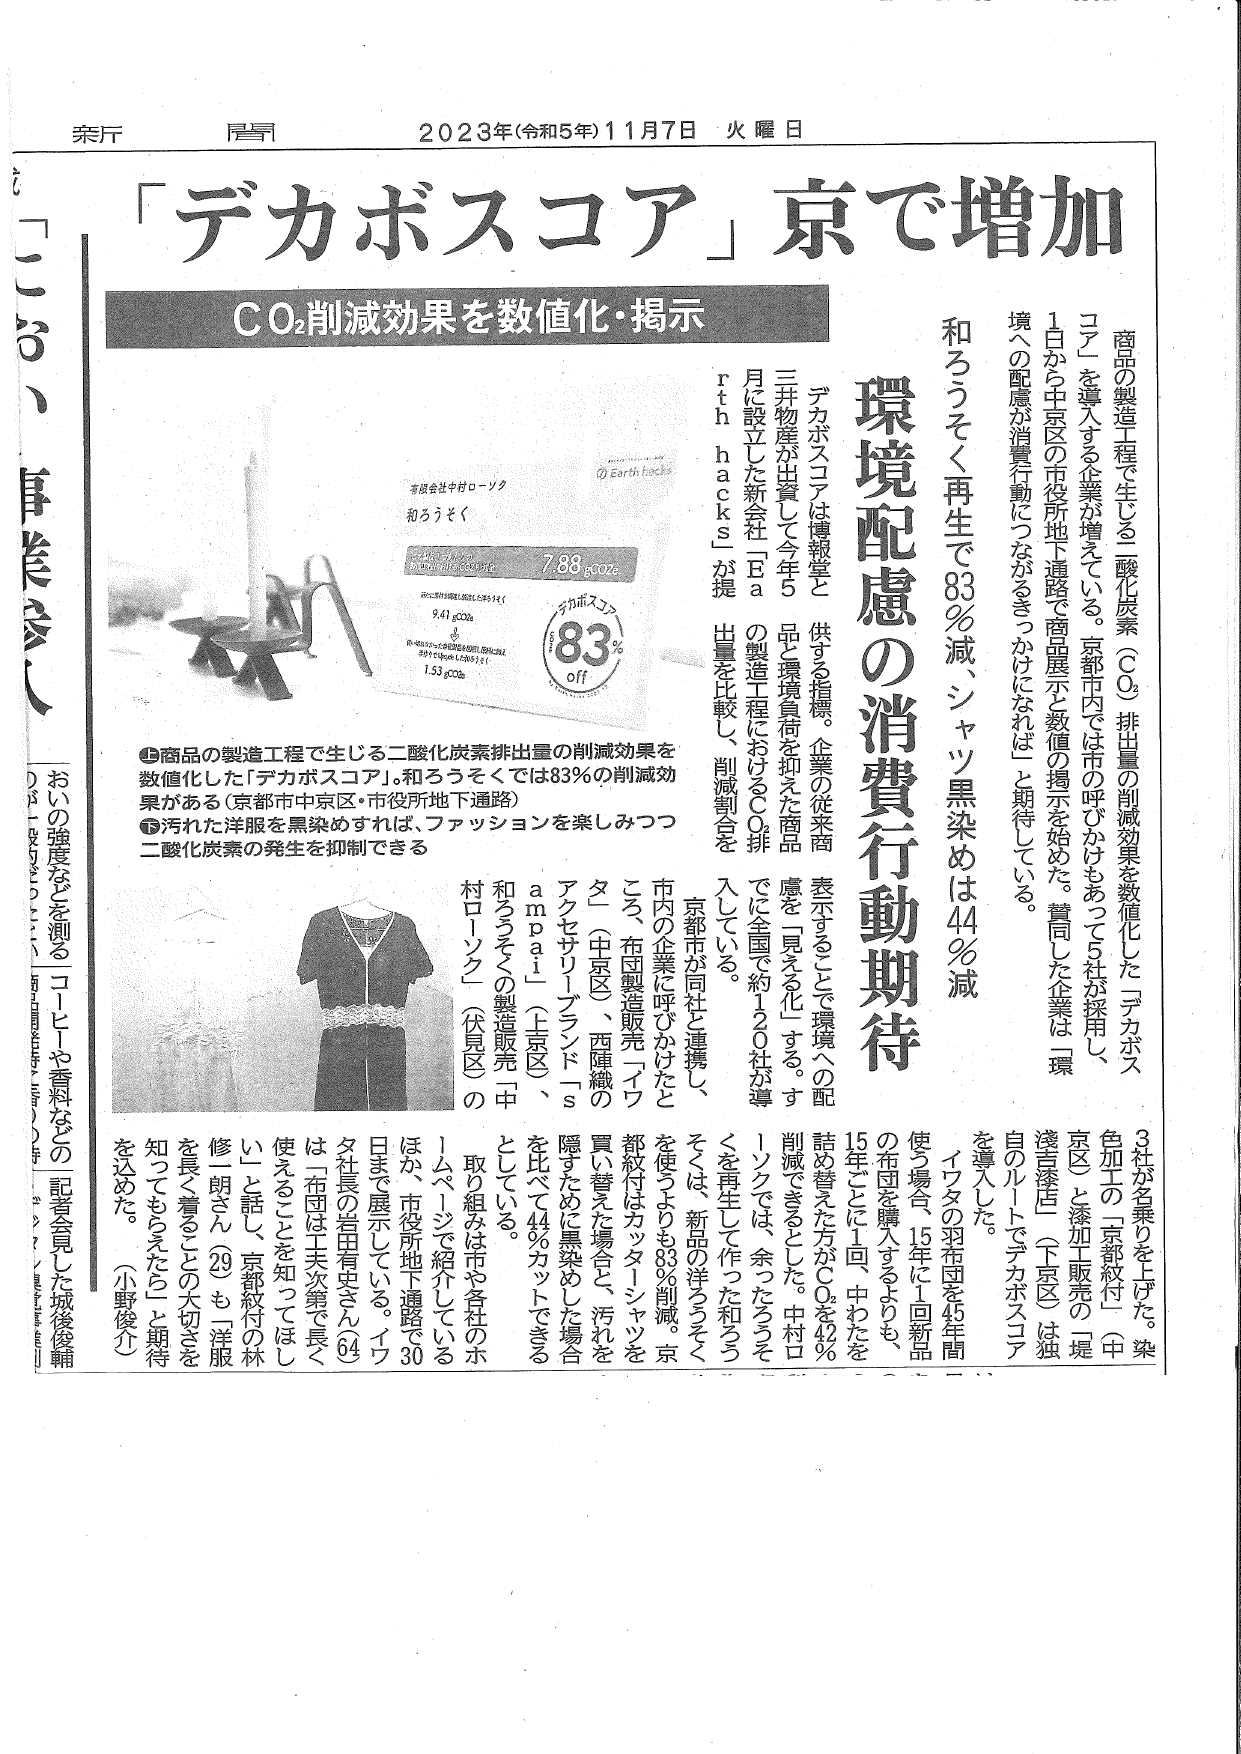 【掲載情報】京都新聞にデカボスコアについて掲載されました。